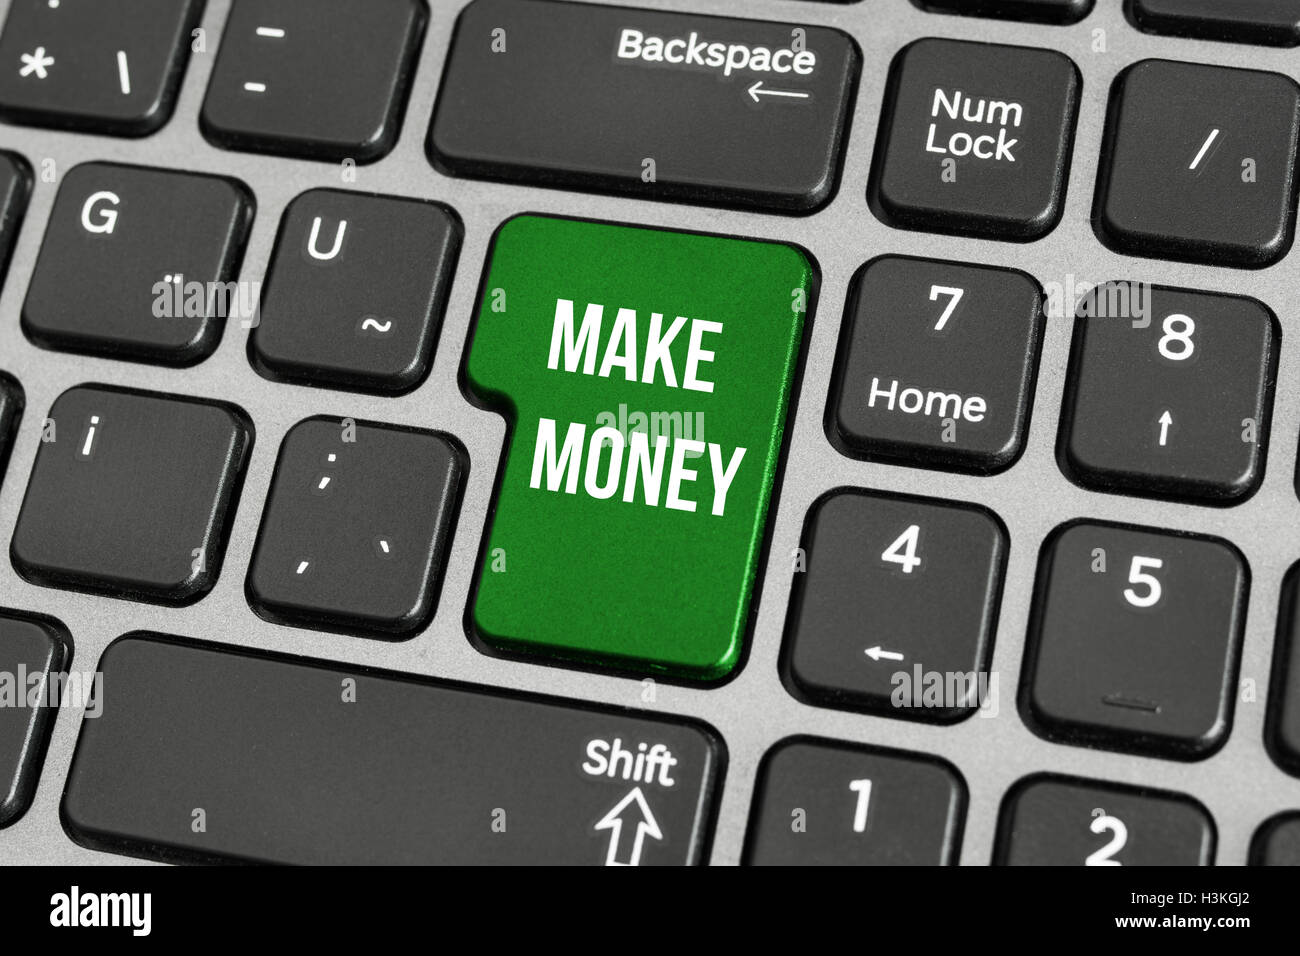 Un concept de faire de l'argent en ligne, avec un message sur la touche Entrée du clavier. Banque D'Images